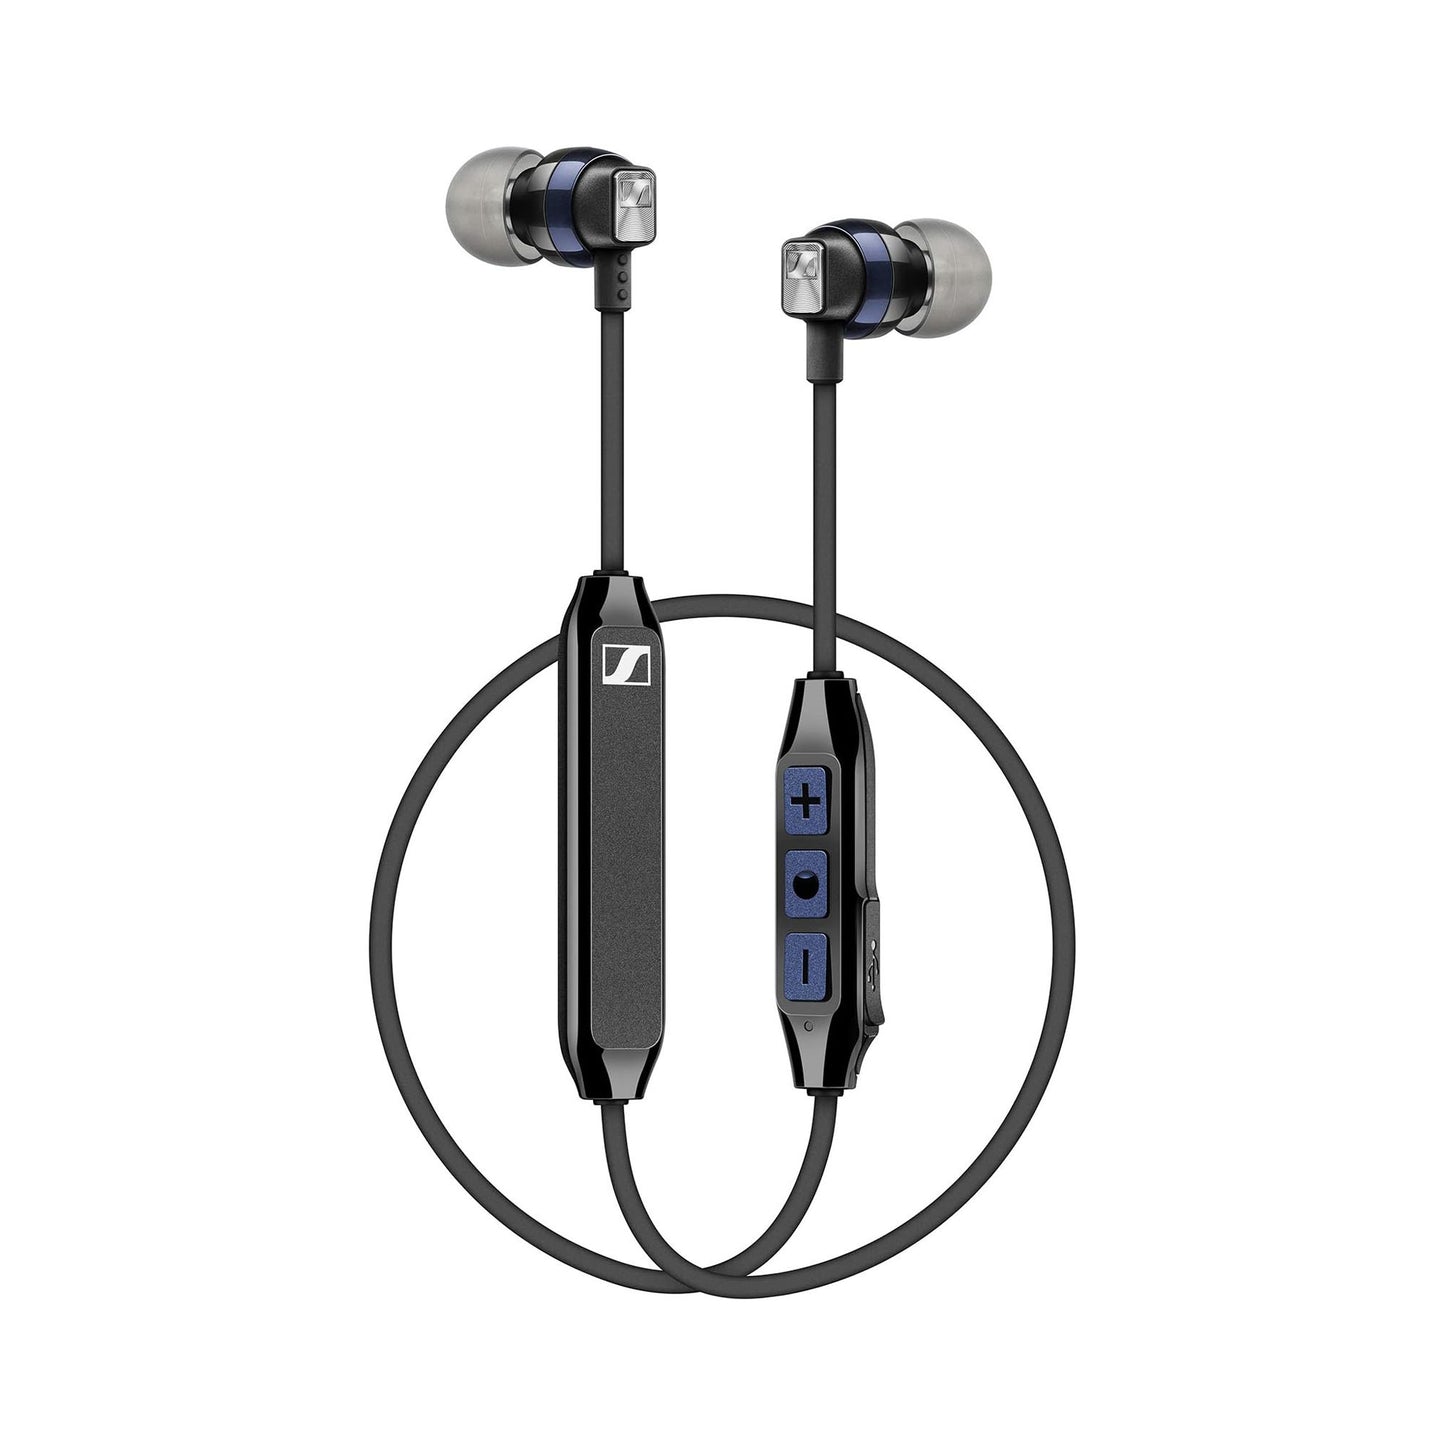 SENNHEISER CX 6.00BT Wireless In-Ear Earphones - Black